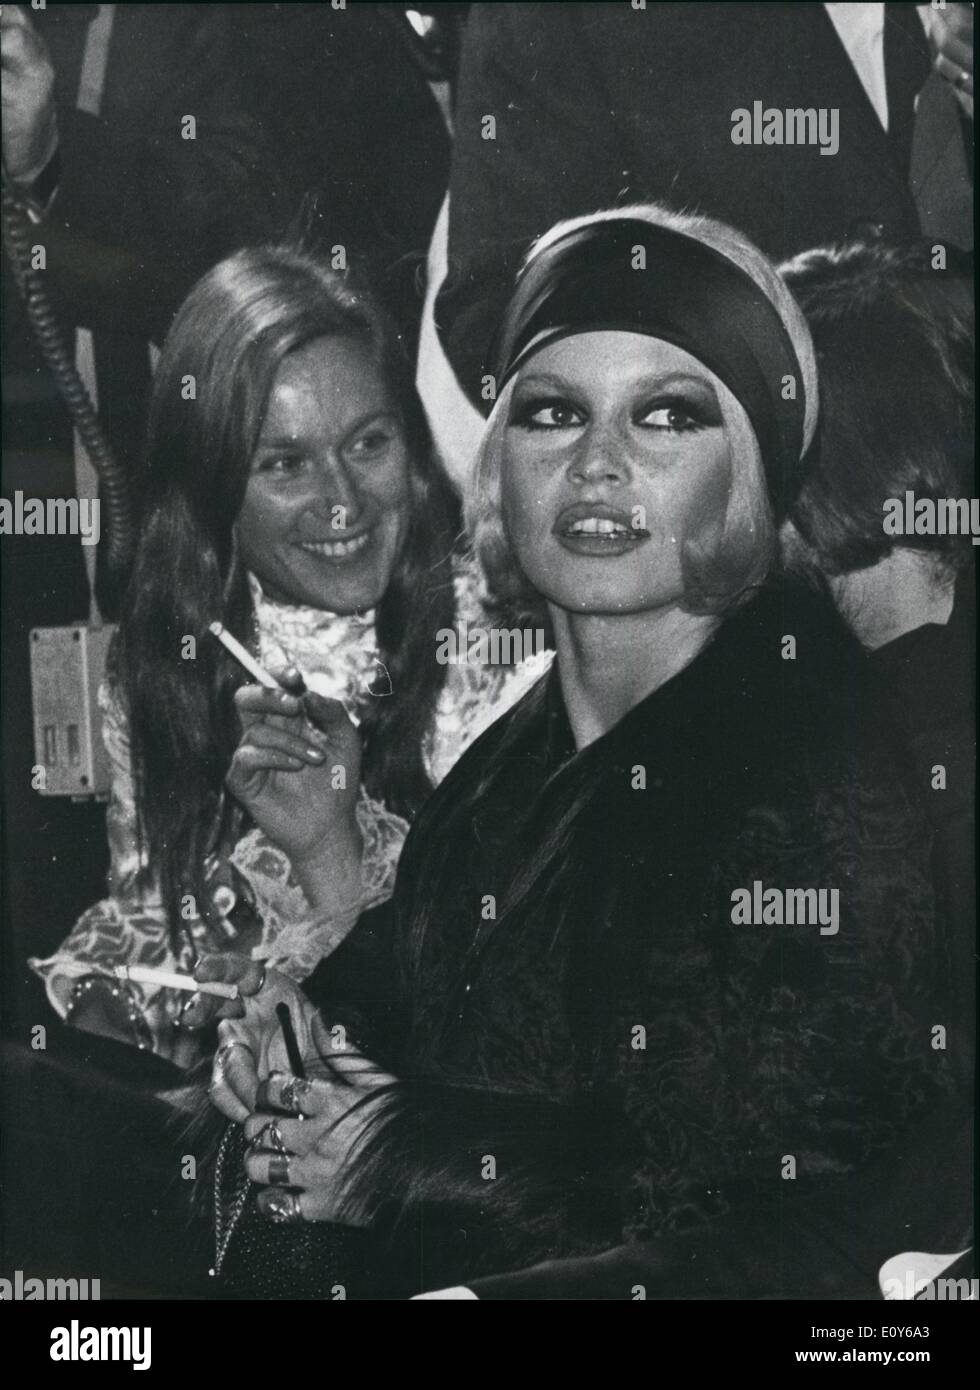 Le 12 décembre 1968 - Dans un costume noir et manteau de fourrure de la  même couleur, Brigitte Bardot a triomphé hier soir lors du premier ministre  de l'Ouest son film ''halako''